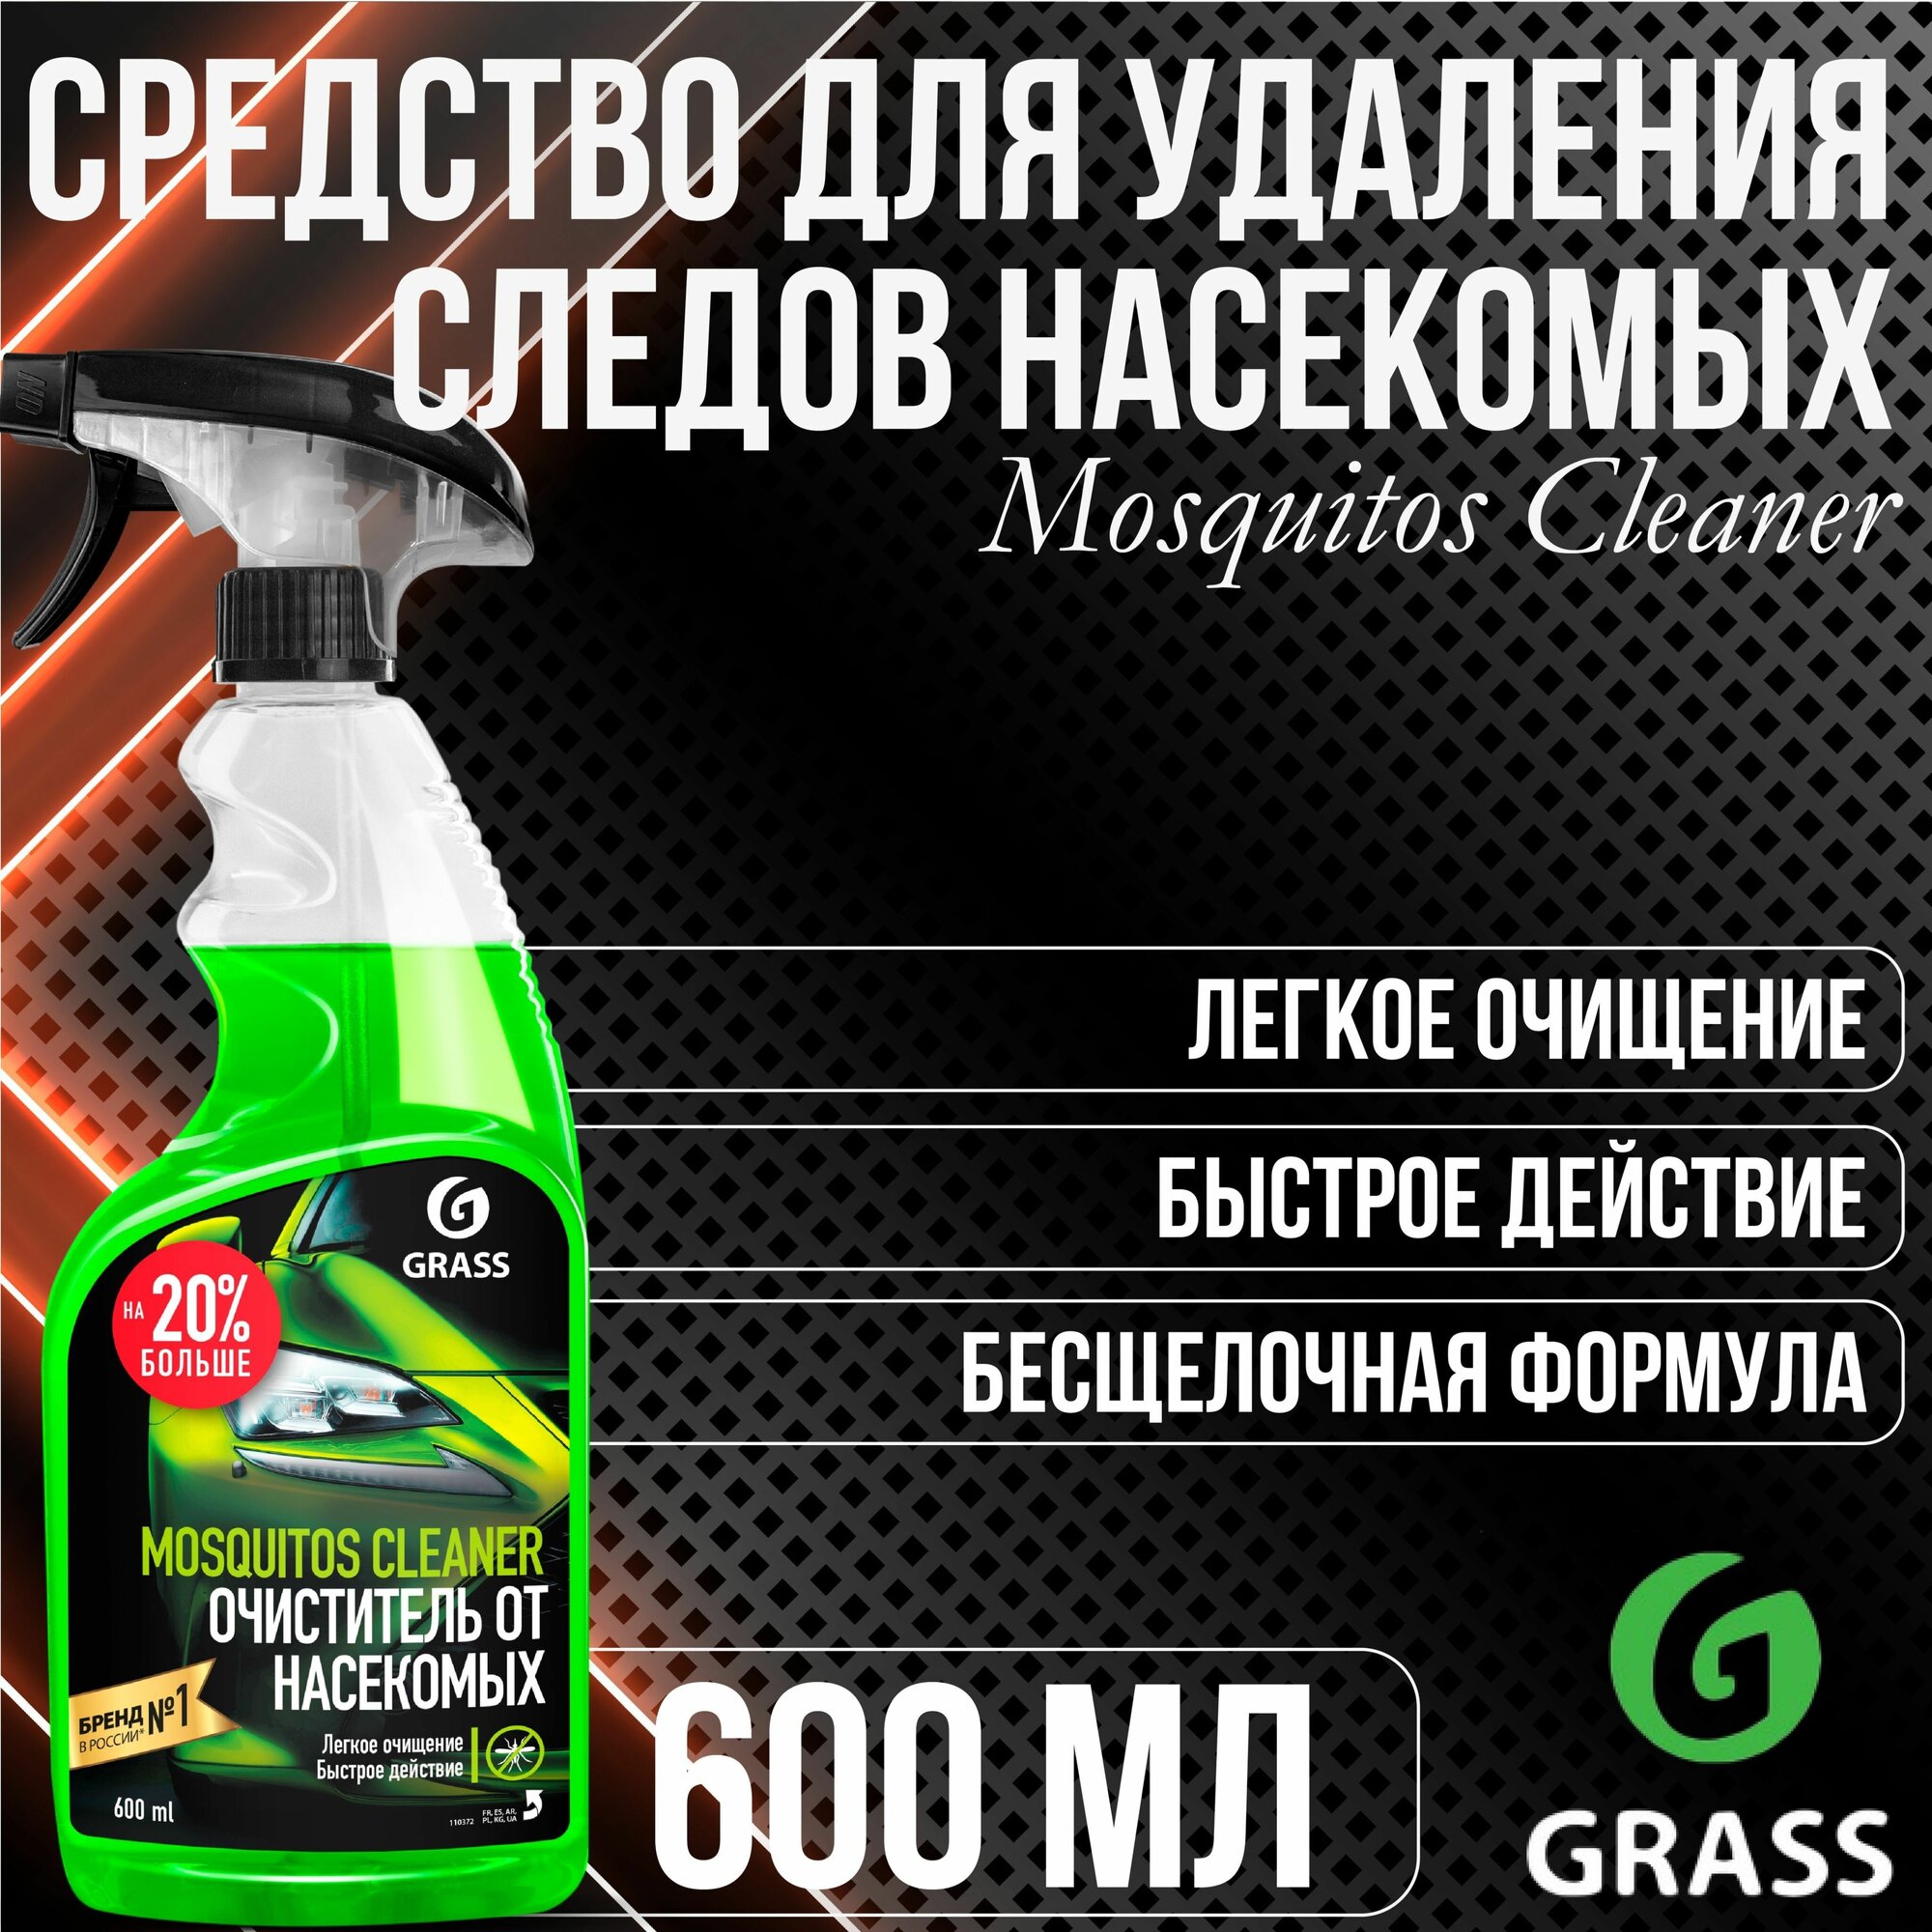 Чистящее средство GRASS Mosquitos Cleaner Средство от следов насекомых 600 мл 110372